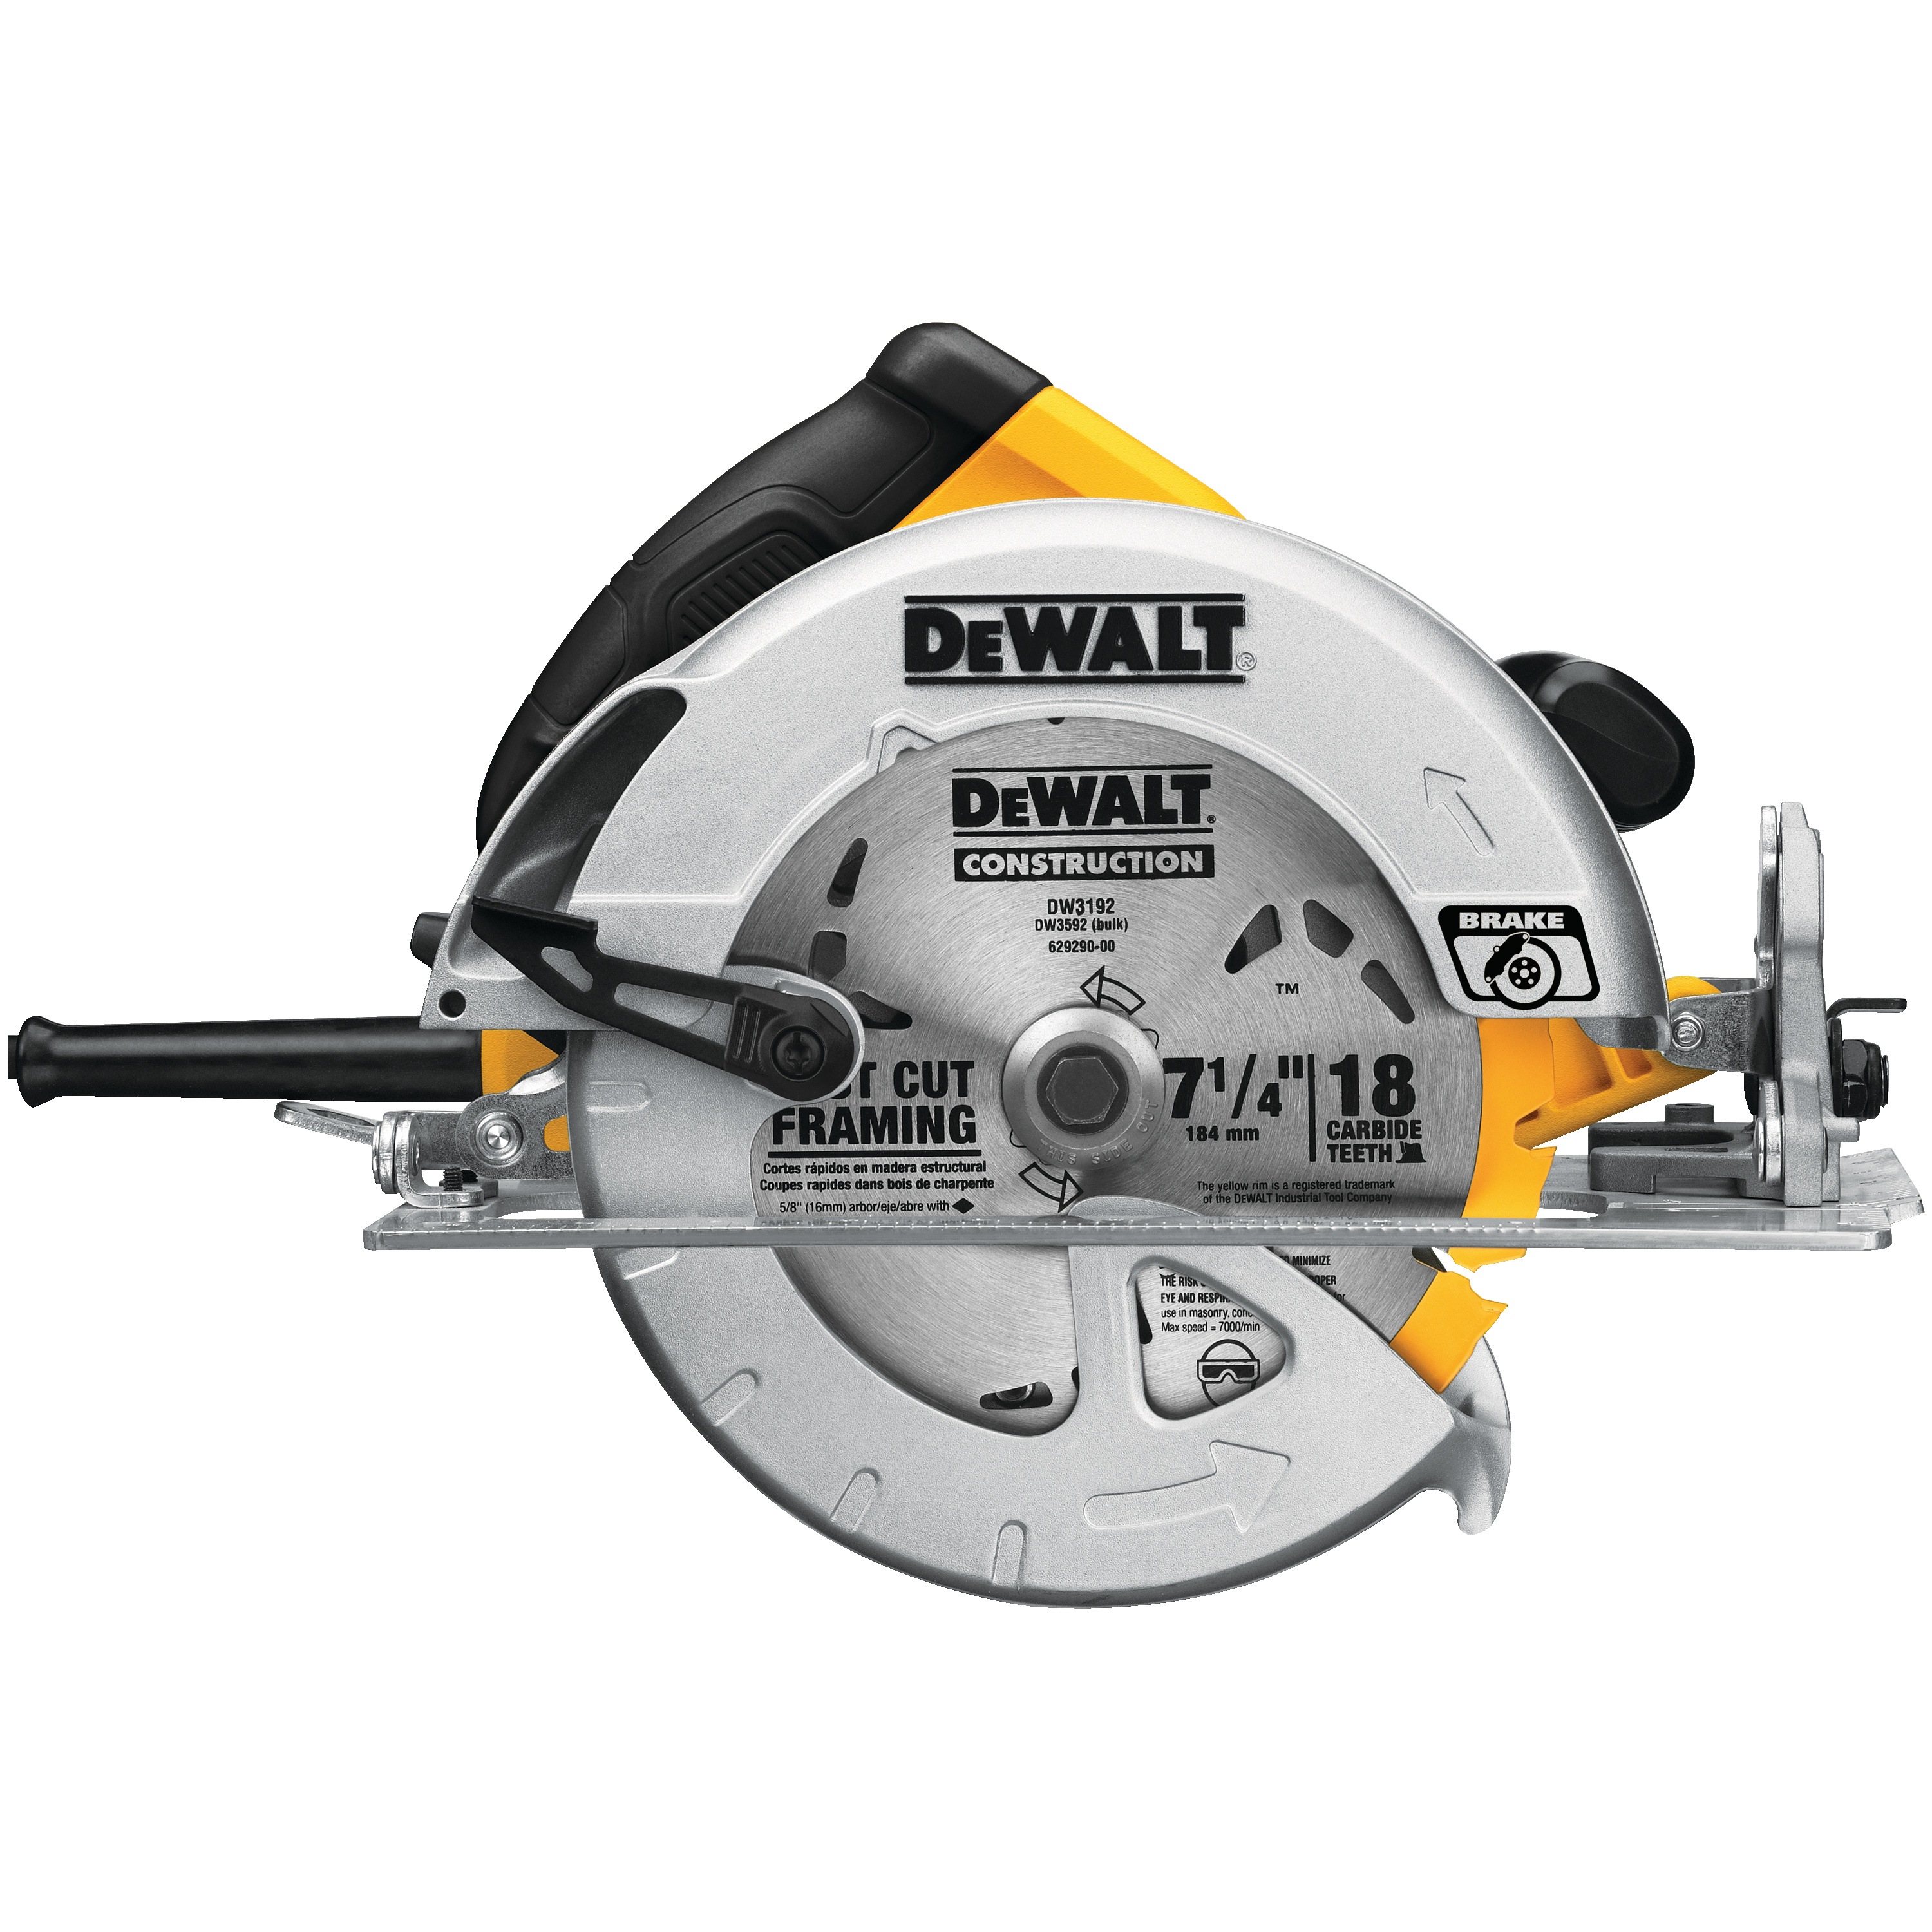 DEWALT - 714 in Lightweight Circular Saw - DWE575SB